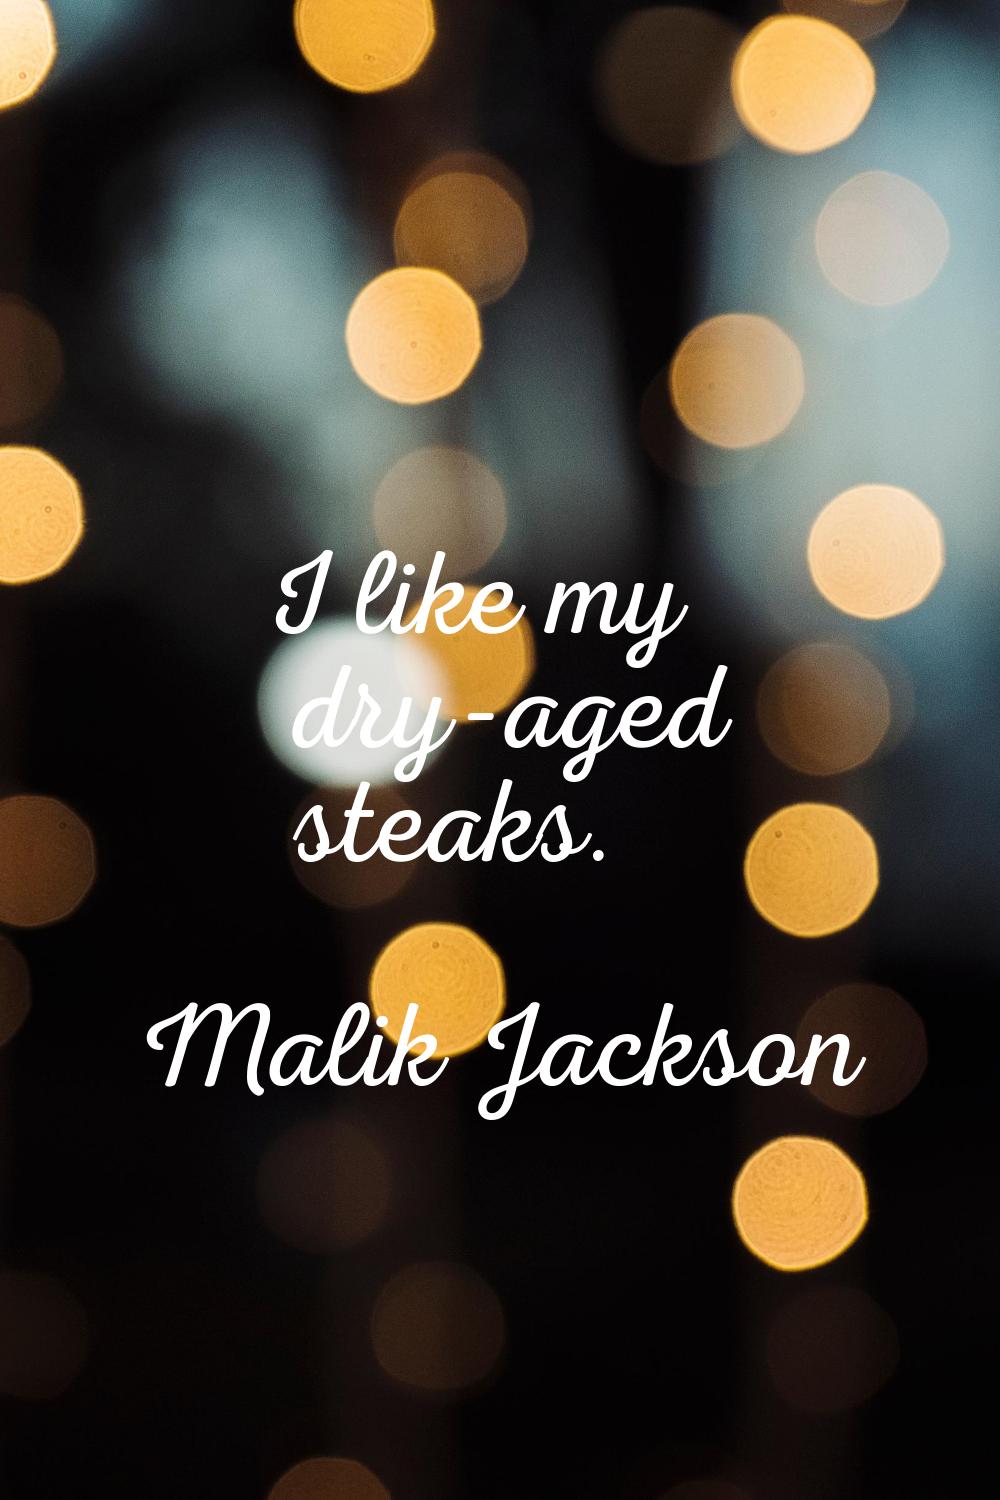 I like my dry-aged steaks.